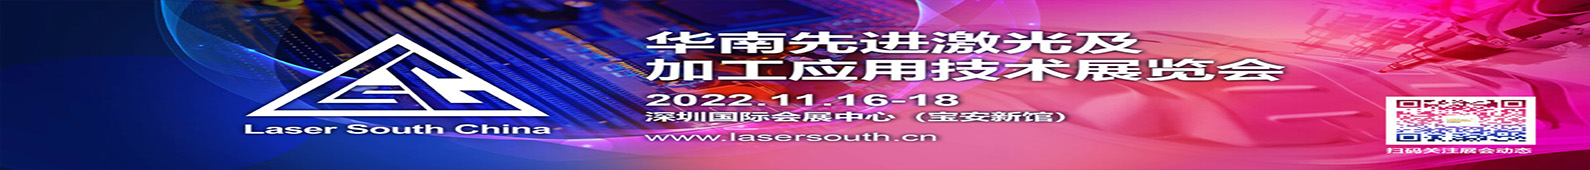 华南先进激光及加工应用技术展览会 LEAP Expo